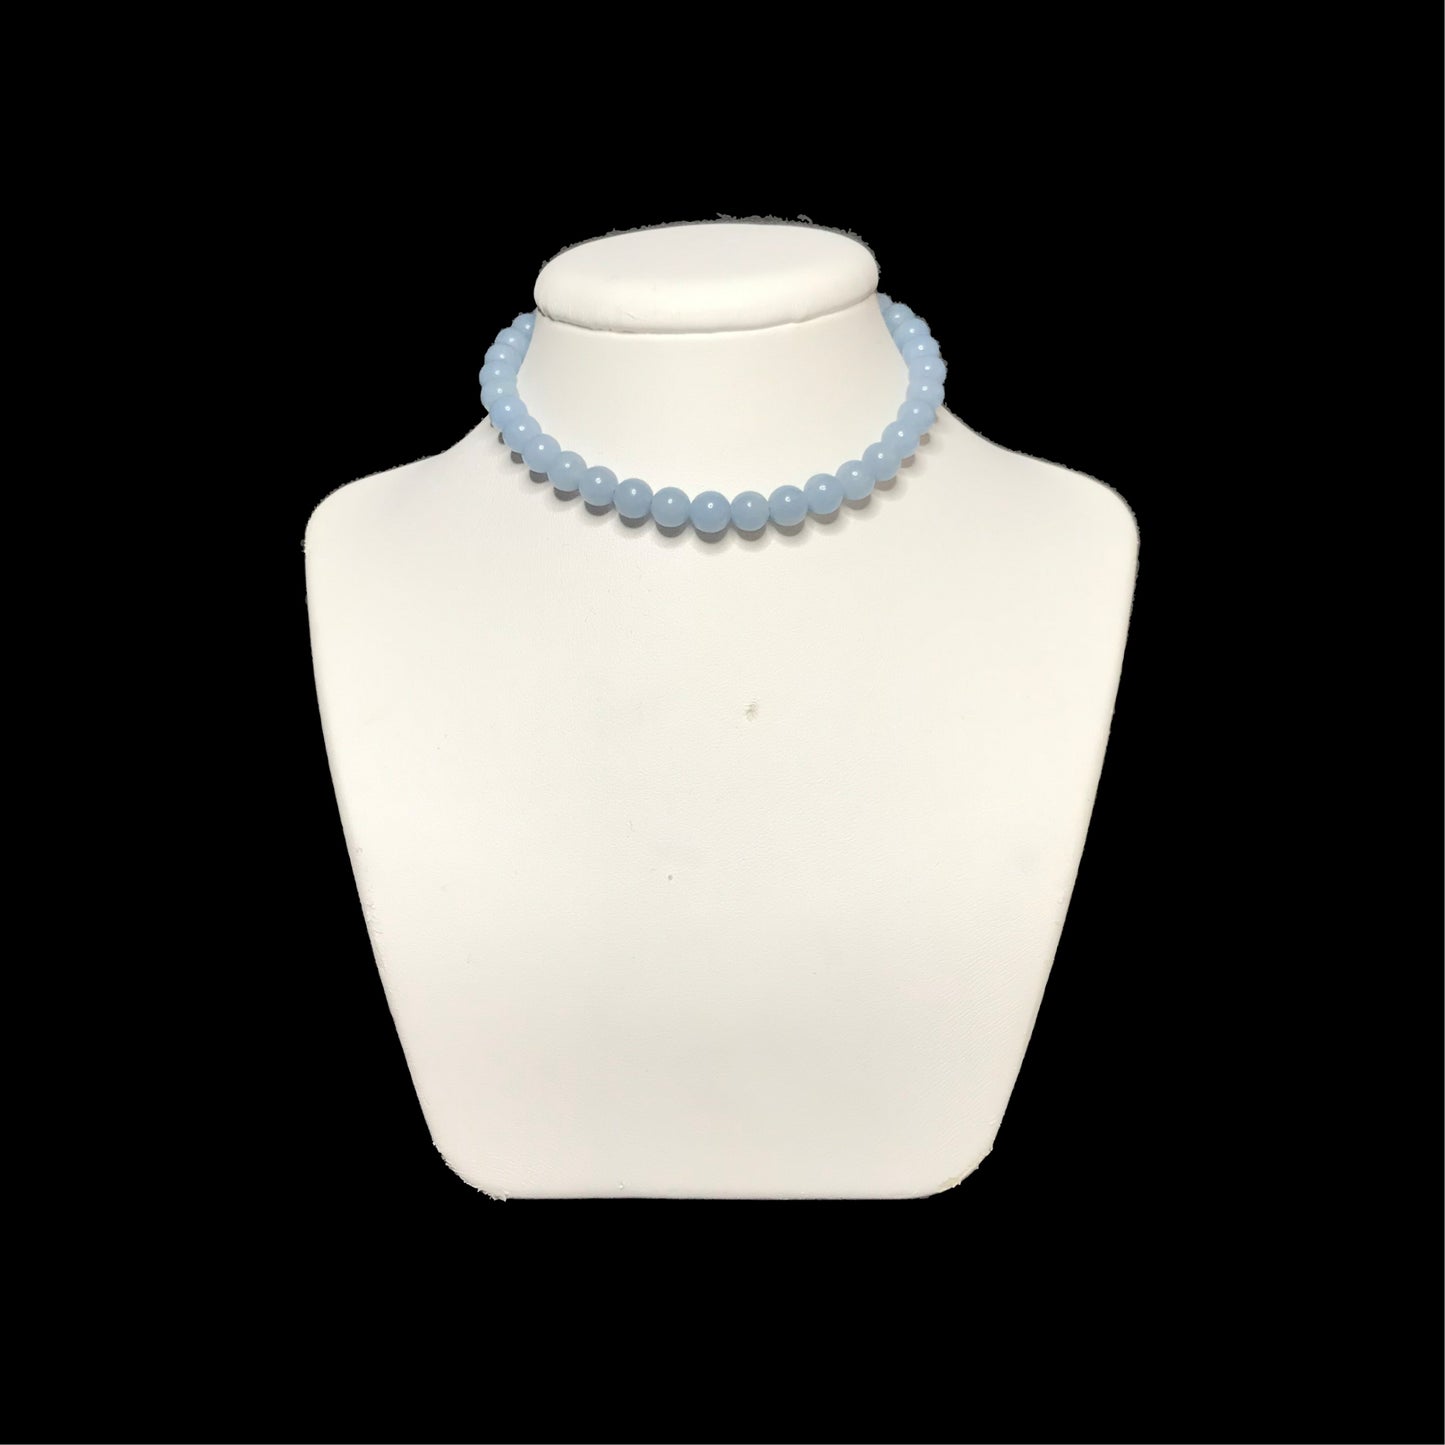 Pale blue choker necklace